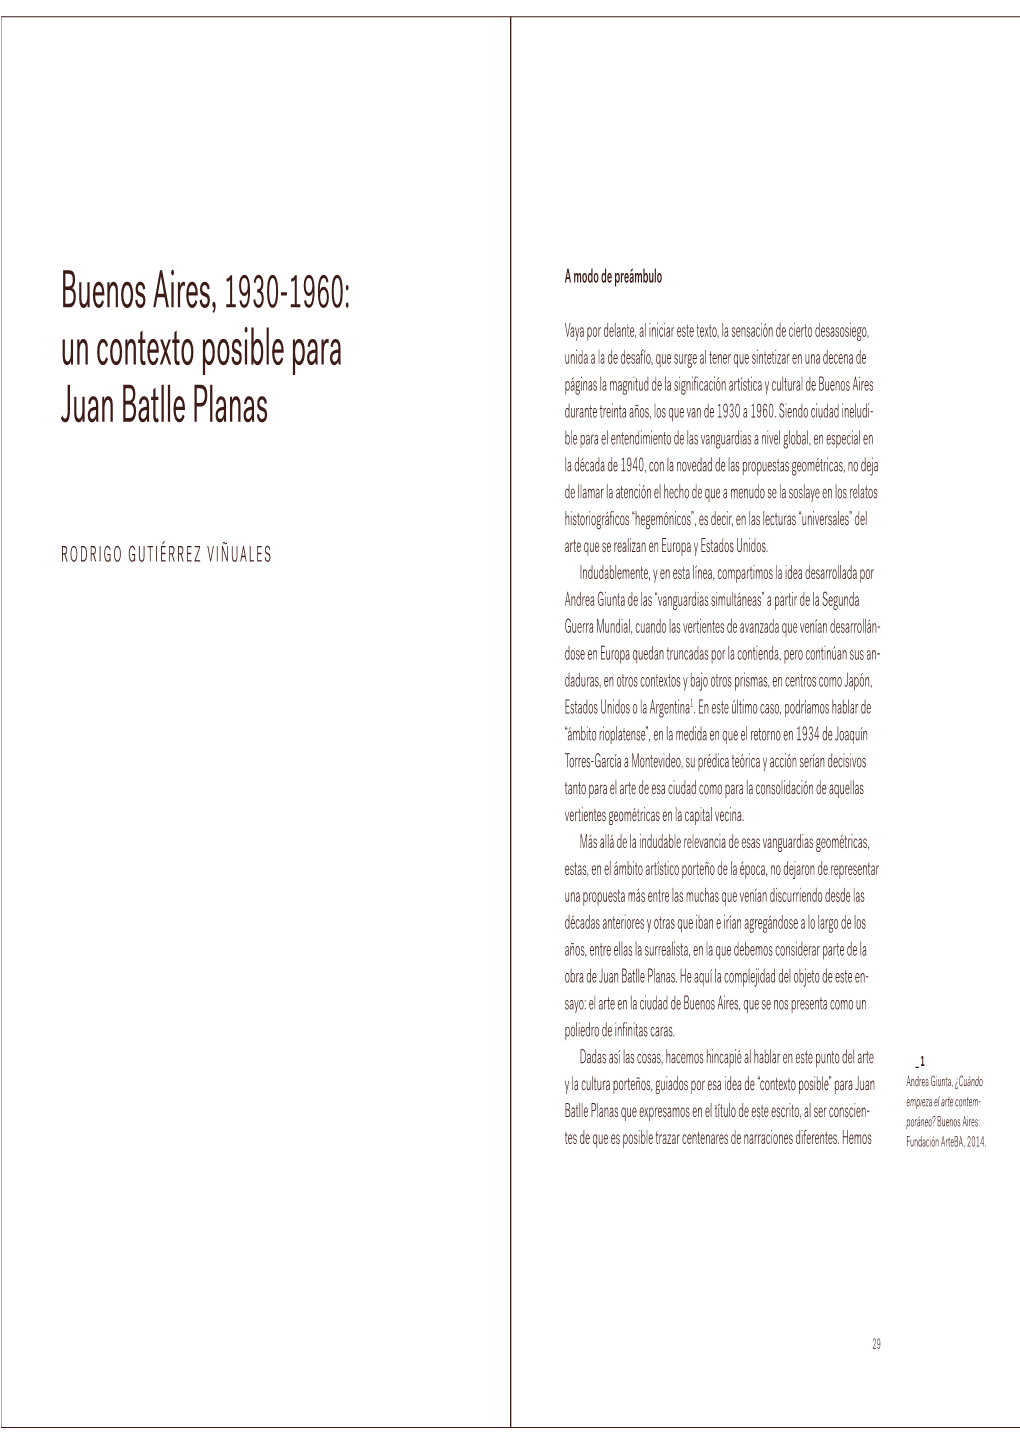 Buenos Aires, 1930-1960: Un Contexto Posible Para Juan Batlle Planas